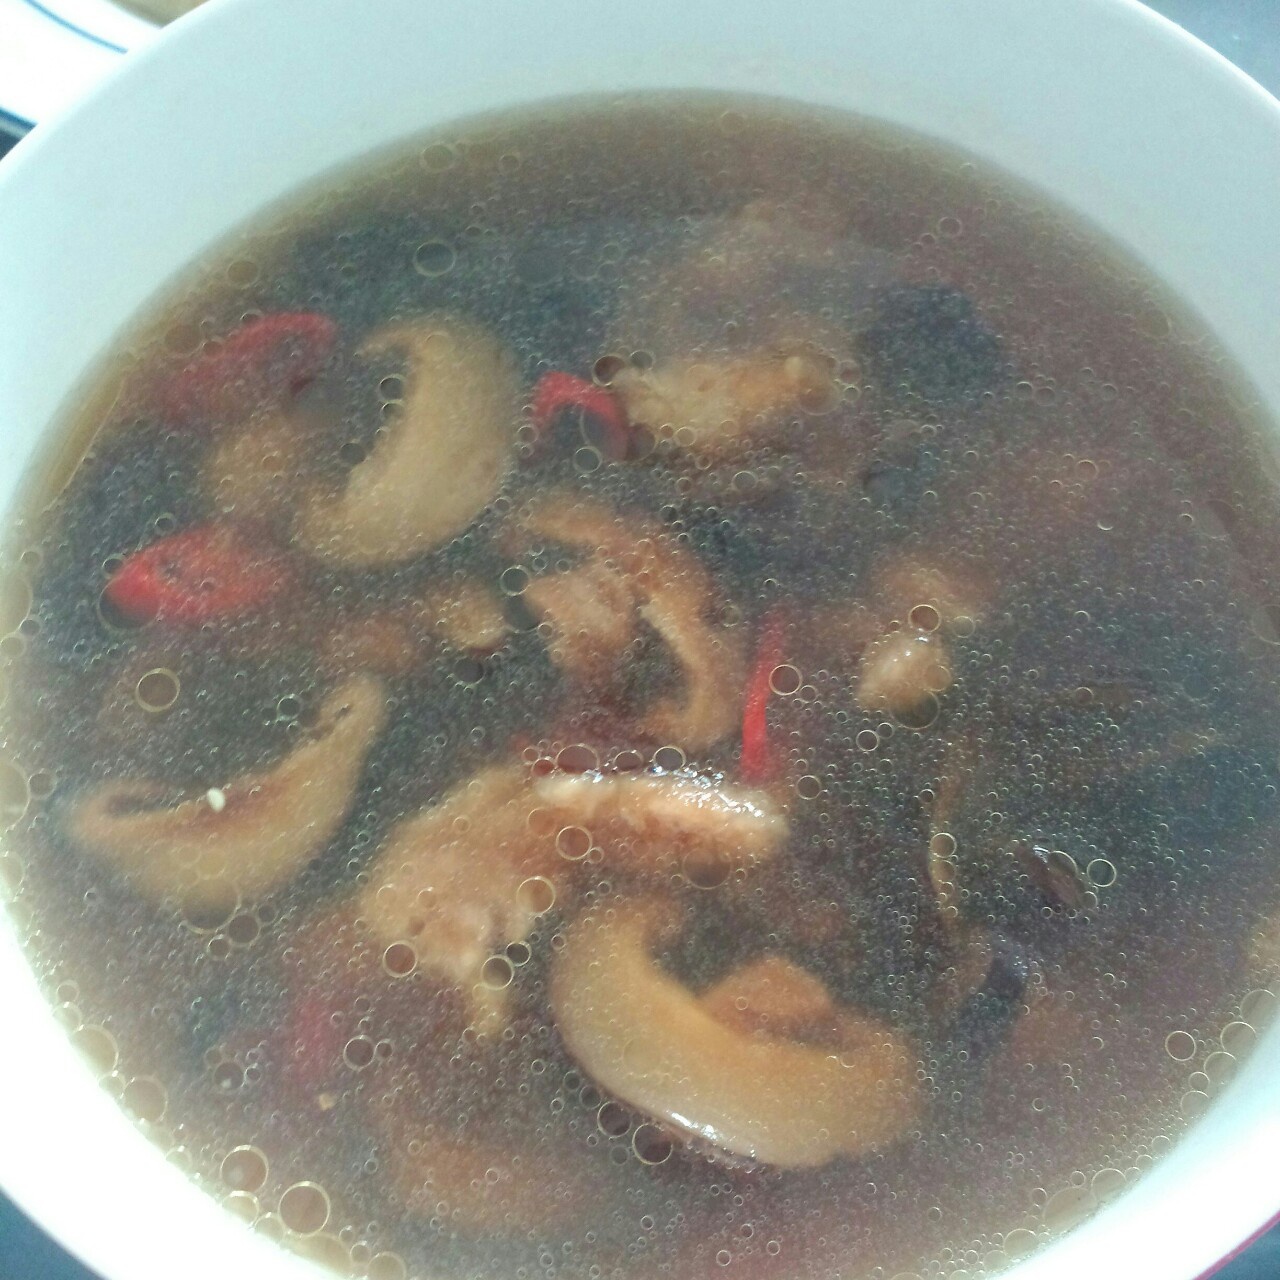 香菇肉片汤